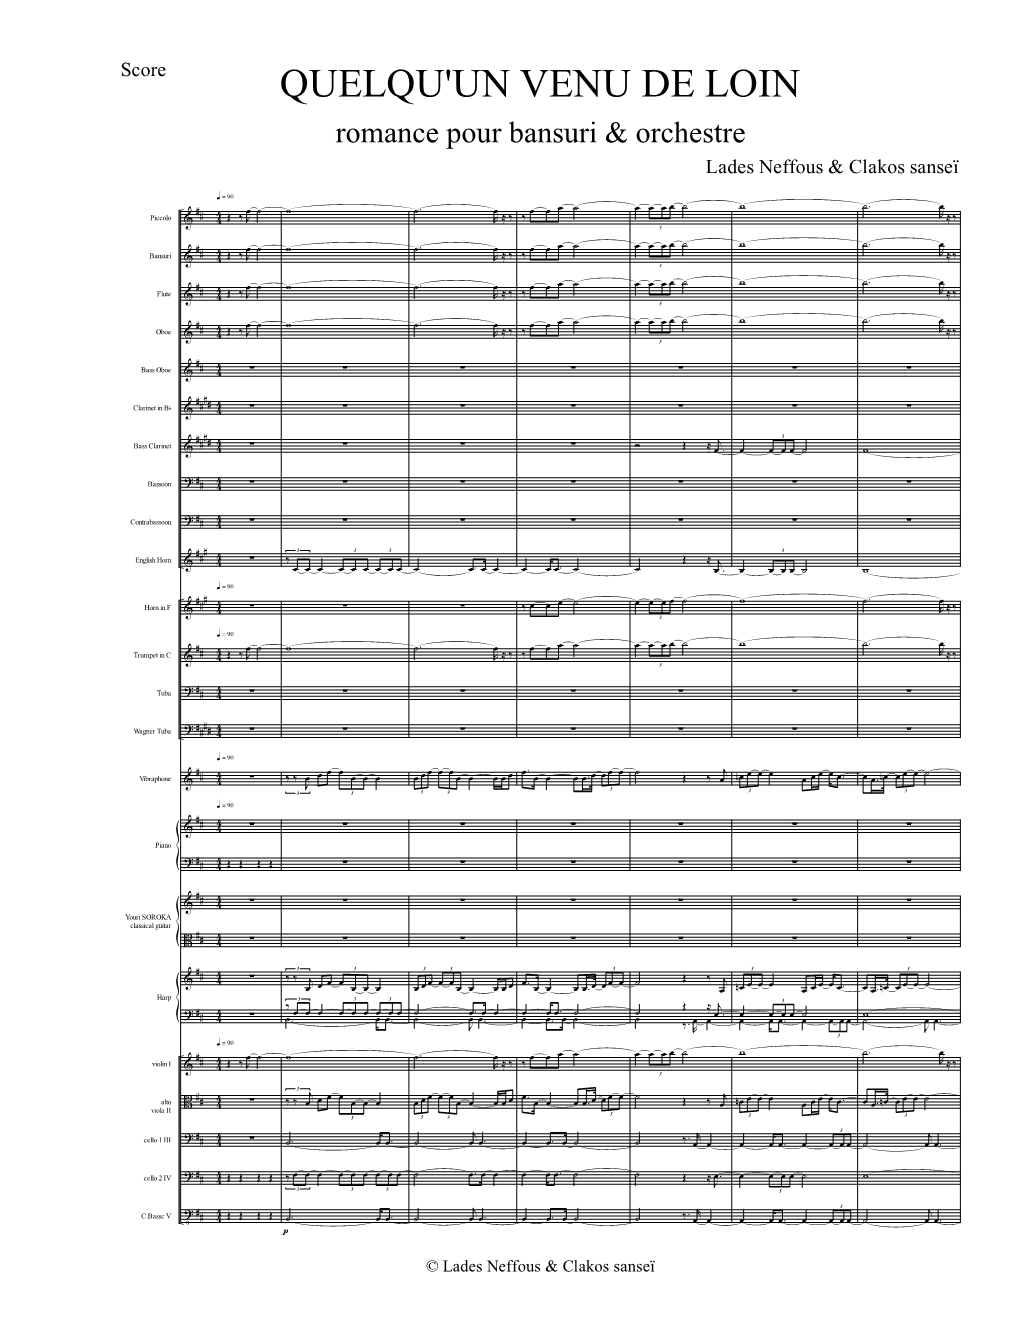 UN VENU DE LOIN Bansuri Orchestre Lades Neffous &amp; Clakos Sanseï.Musx